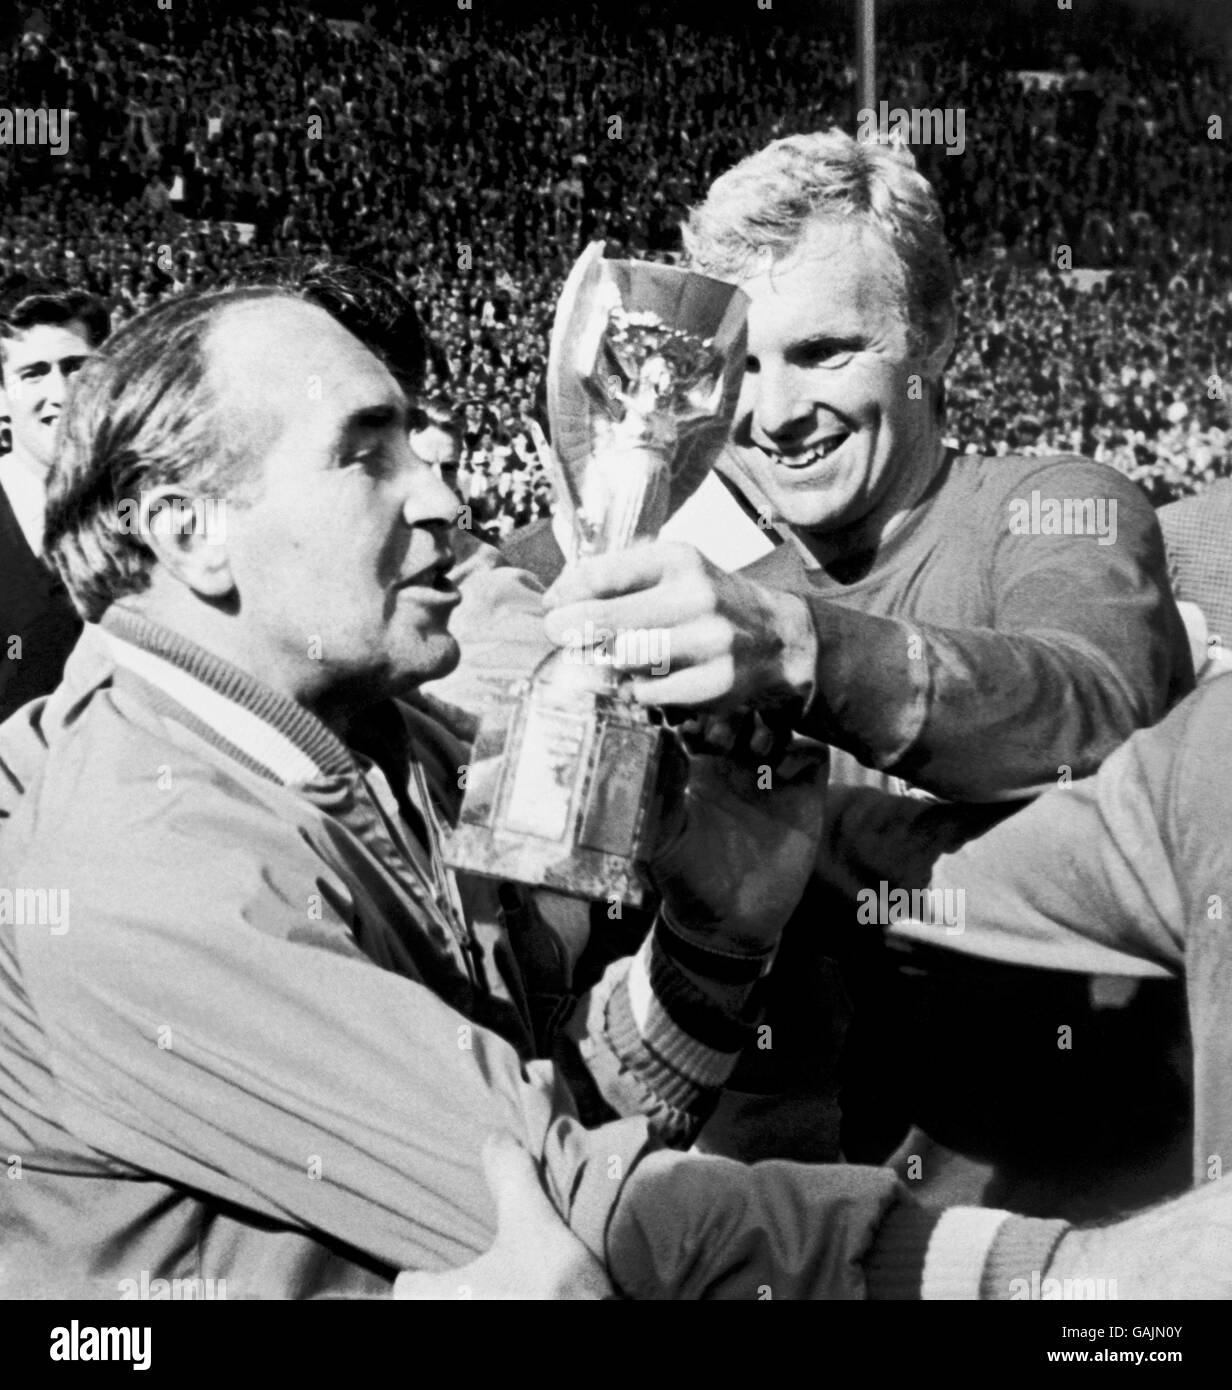 England gegen Westdeutschland - Weltcup-Finale 1966 - Wembley-Stadion. Der jubelende englische Kapitän Bobby Moore (r) zeigt nach dem Sieg über 4-2 die Jules Rimet-Trophäe an Manager Alf Ramsey (l). Stockfoto